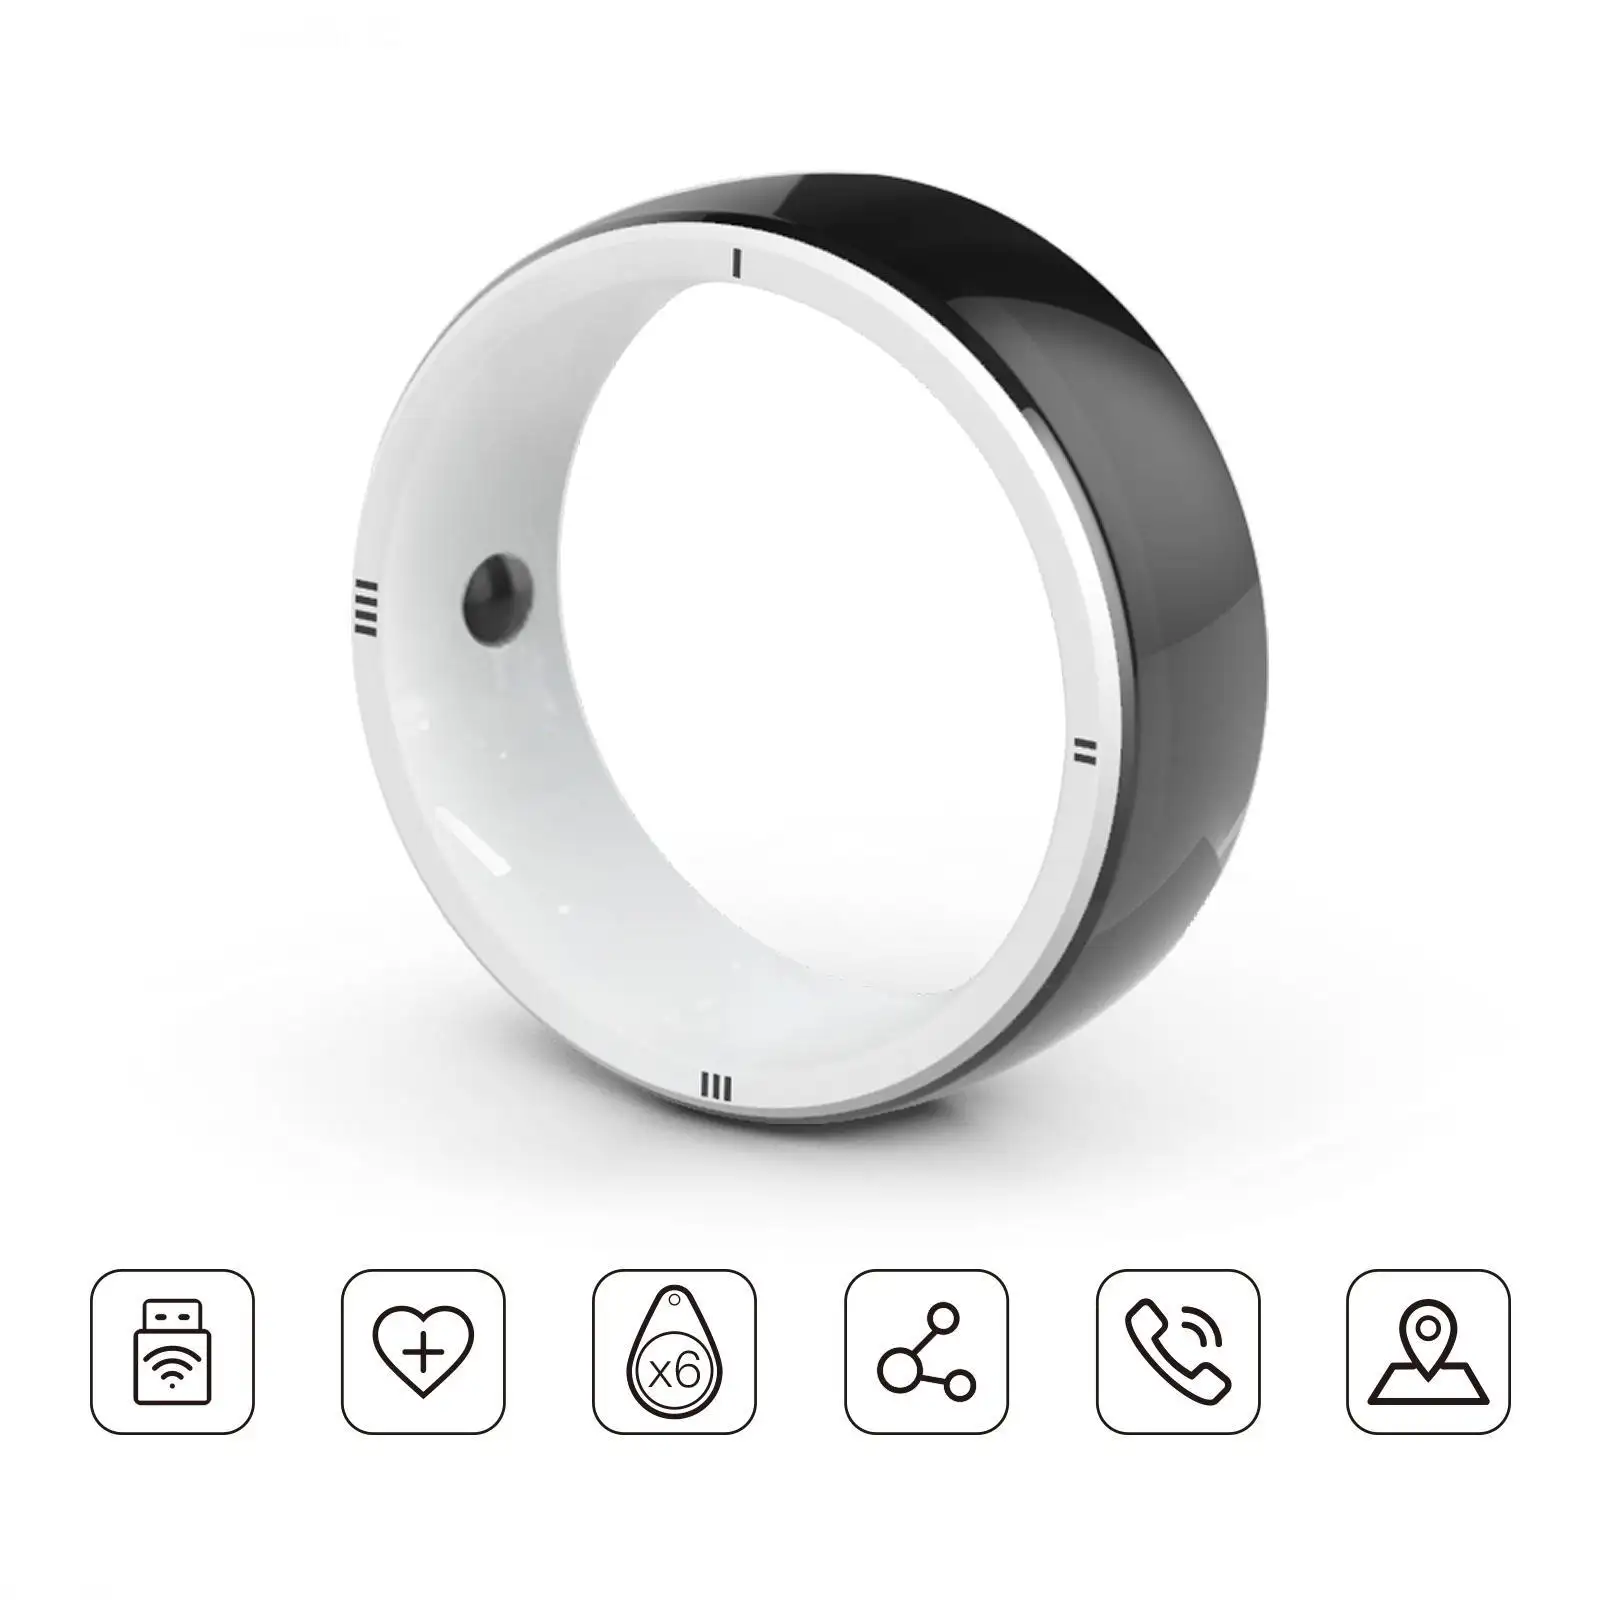 Anello intelligente JAKCOM R5 nuovo prodotto anello intelligente come supporto mobile altoparlante magnetico 2020 mp3 canzone arabica download galaxy tab s4 s pen